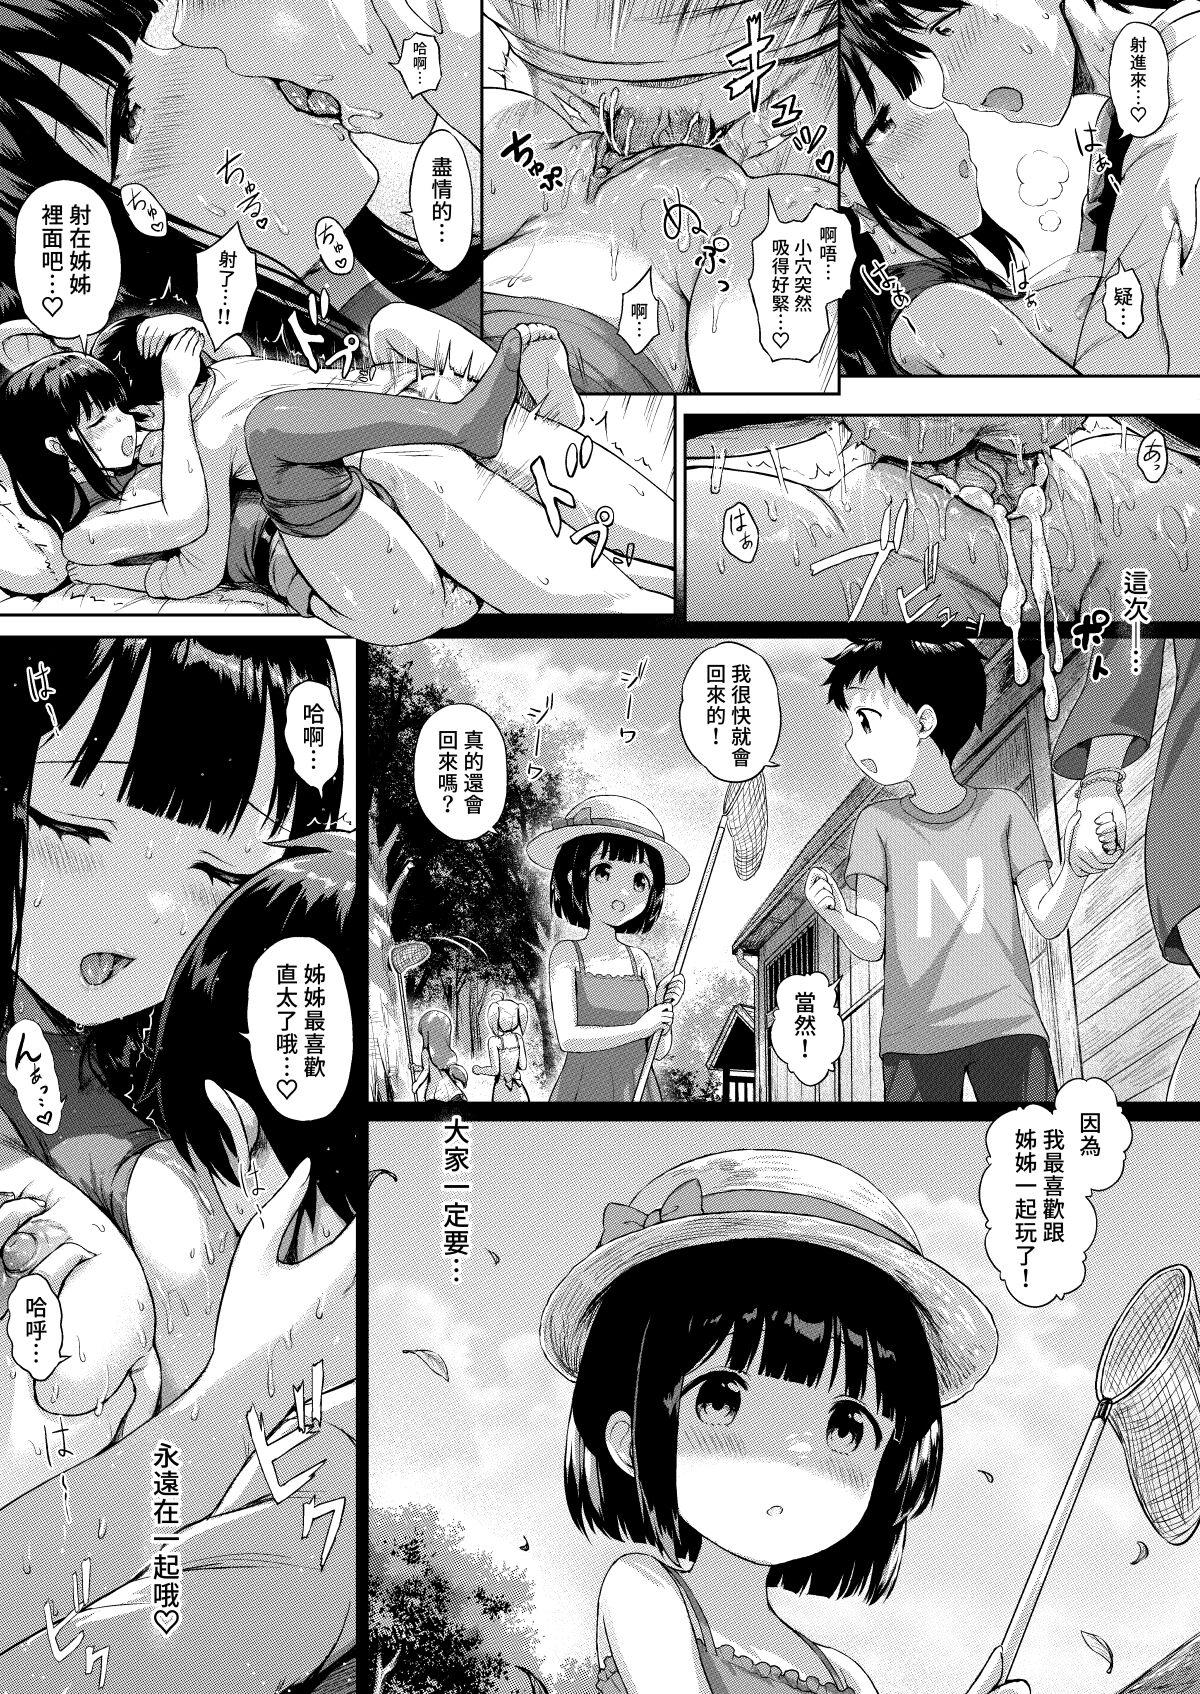 Sanshimai Manga ep1 p1-20 15